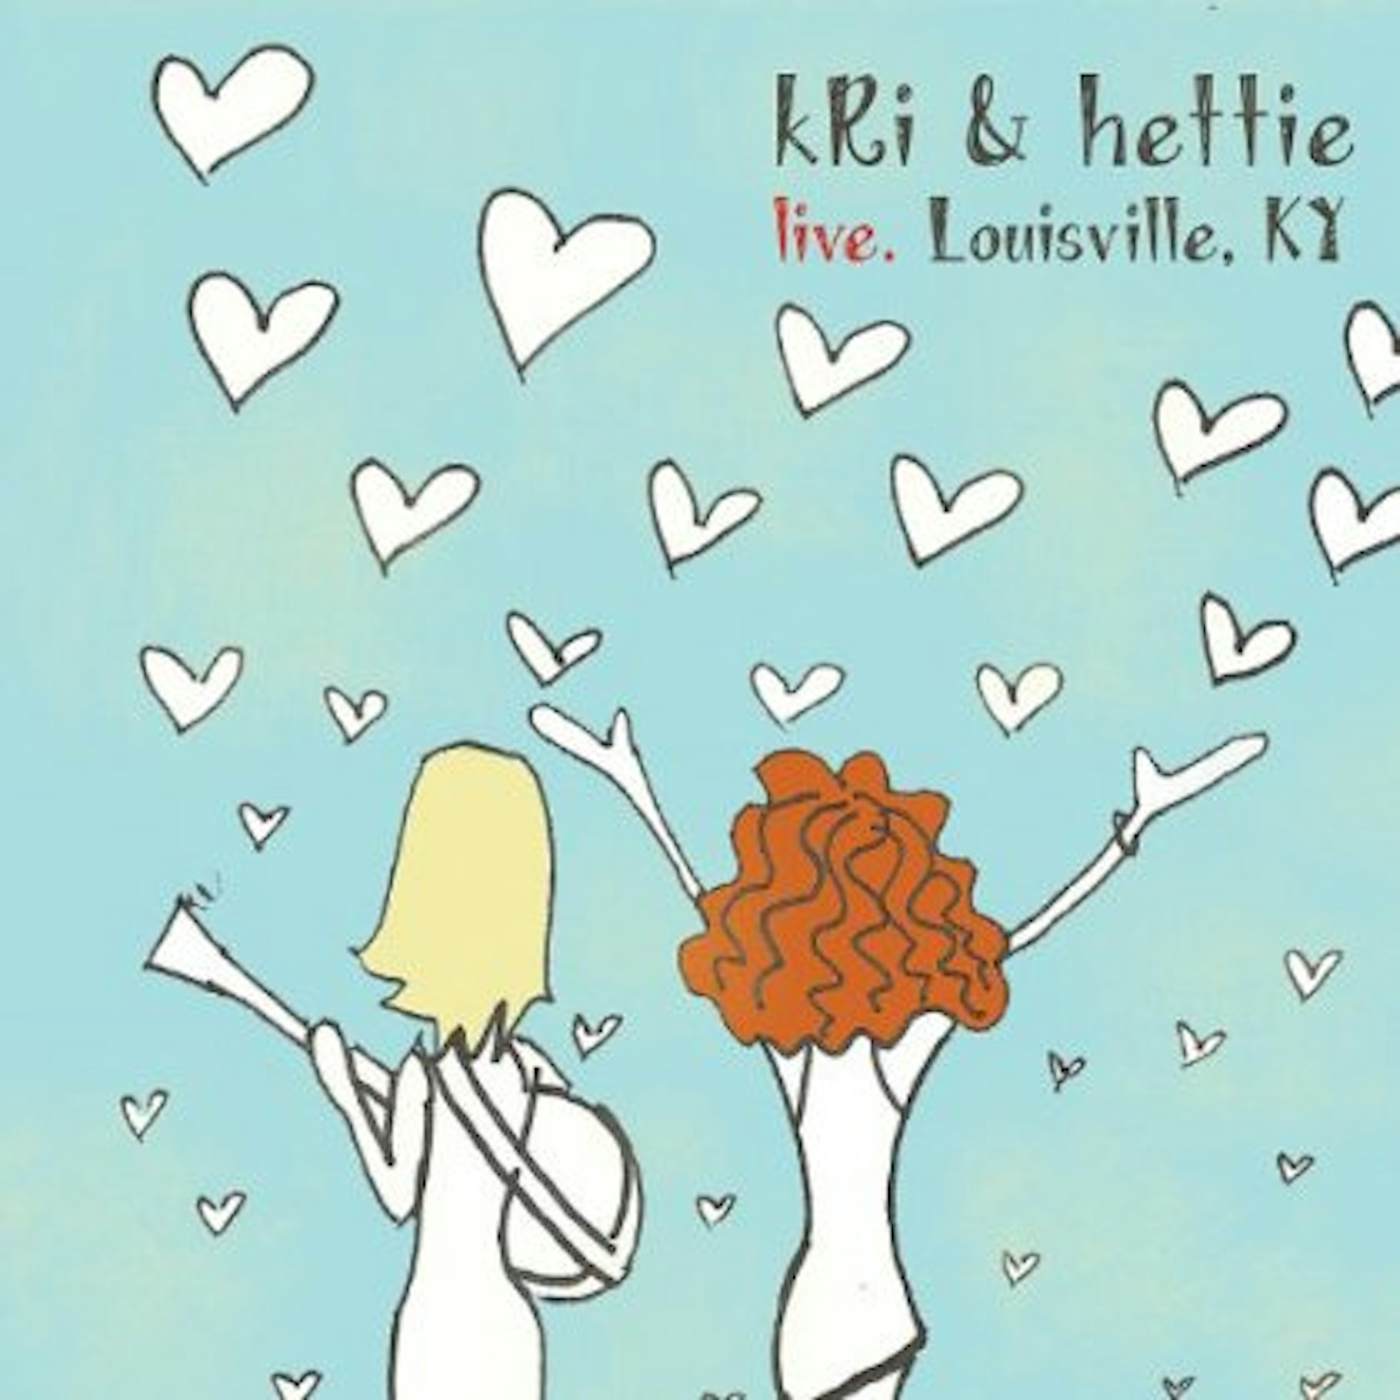 Kri & Hettie LIVE. LOUISVILLE KY CD